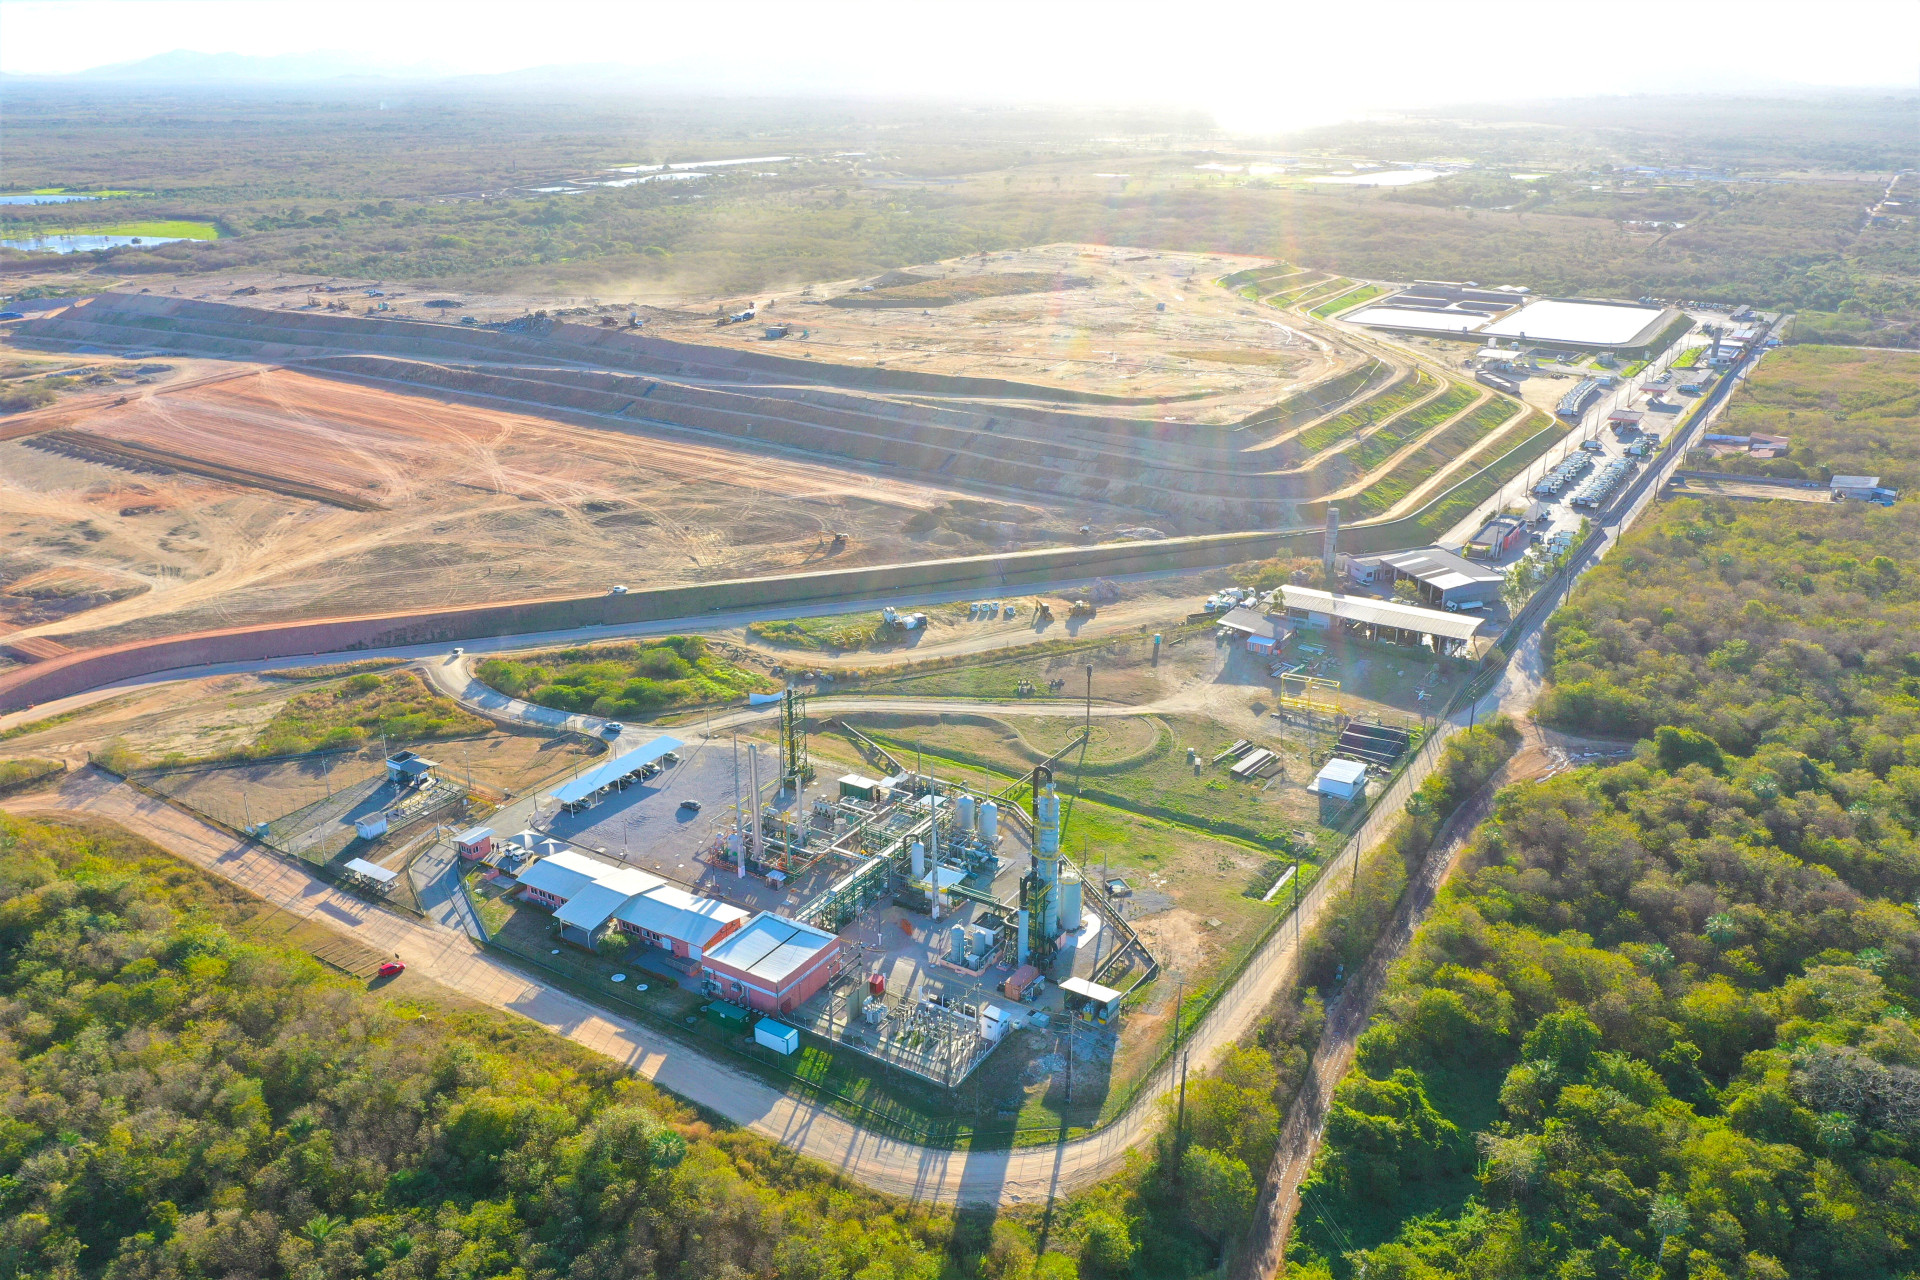 LIXO do Aterro Sanitário de Caucaia é matéria prima para a usina de produção de biometano GNR Fortaleza (Foto: Barbosa Neto/Divulgação)